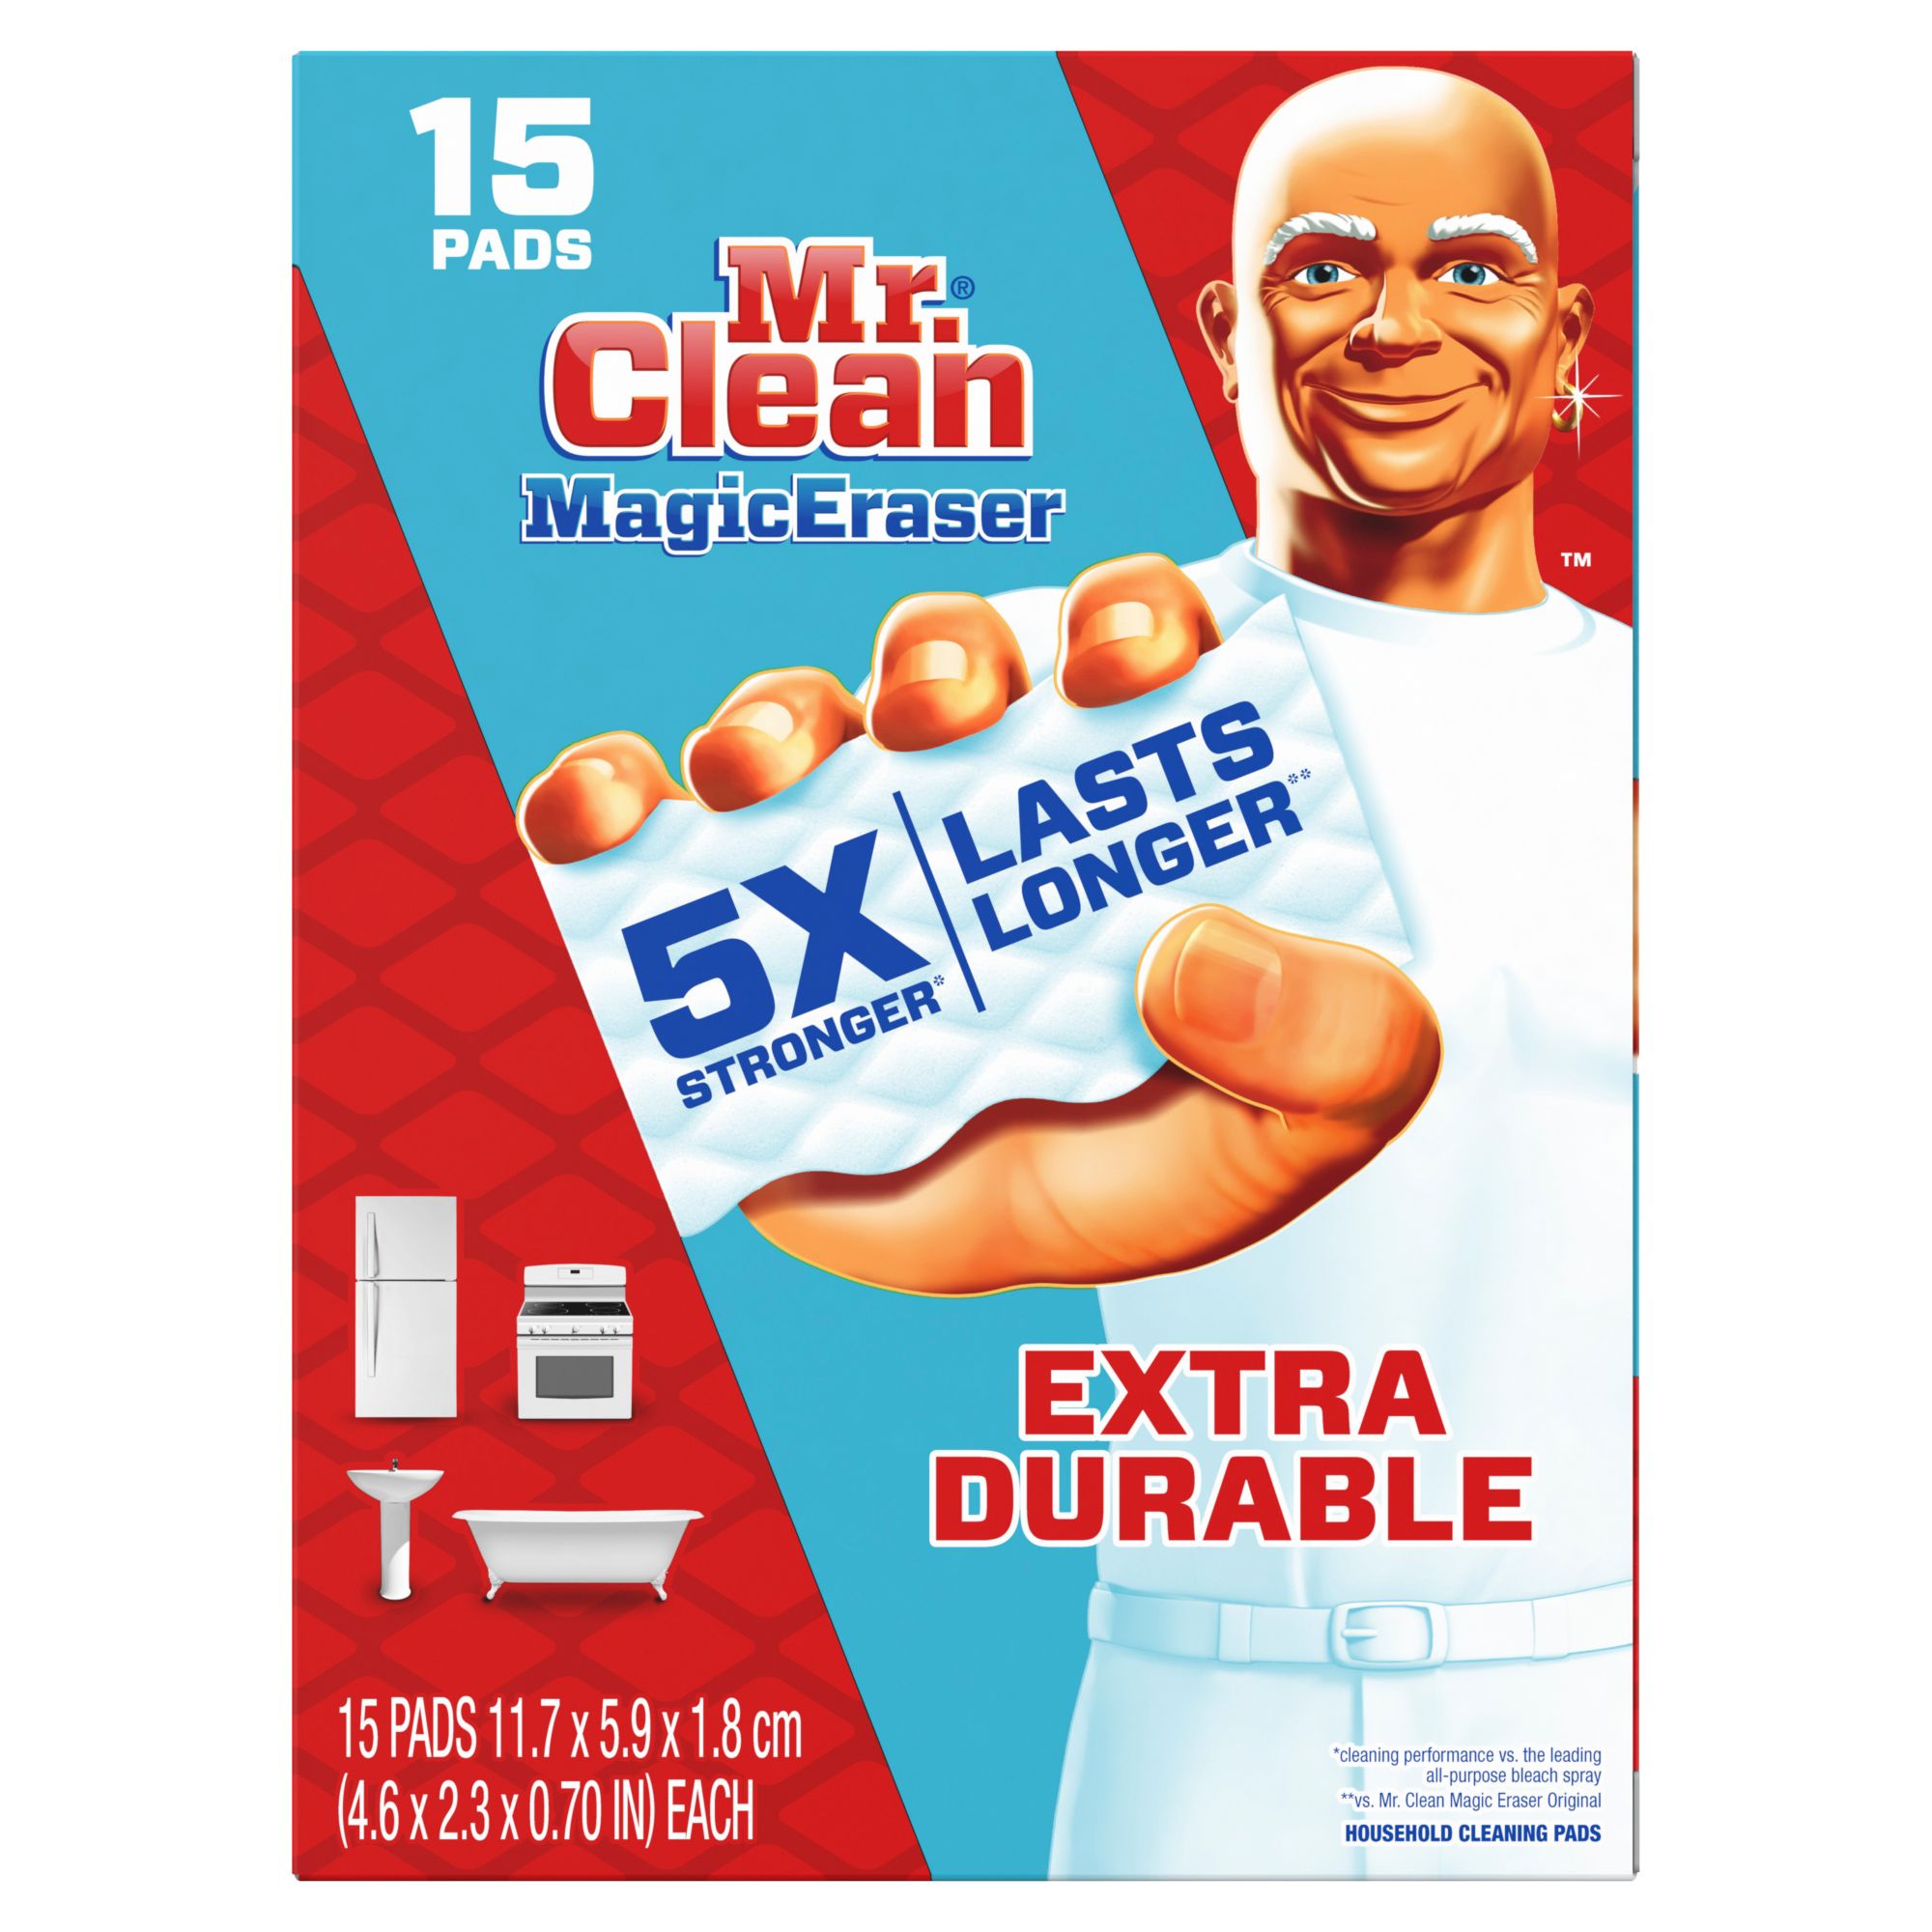 Bộ 15 miếng lau chùi Mr. Clean Extra Durable Scrub Magic Eraser - BJs... Với bộ 15 miếng lau chùi Mr. Clean Extra Durable Scrub Magic Eraser, bạn sẽ không cần phải lo lắng về việc mua sản phẩm vệ sinh nhiều lần. Việc lau chùi các bề mặt sẽ trở nên dễ dàng hơn bao giờ hết và sản phẩm sẽ kéo dài thời gian sử dụng. Xem ảnh để tìm hiểu thêm về sản phẩm này của BJs và tại sao đó là một sự lựa chọn thông minh cho bạn.